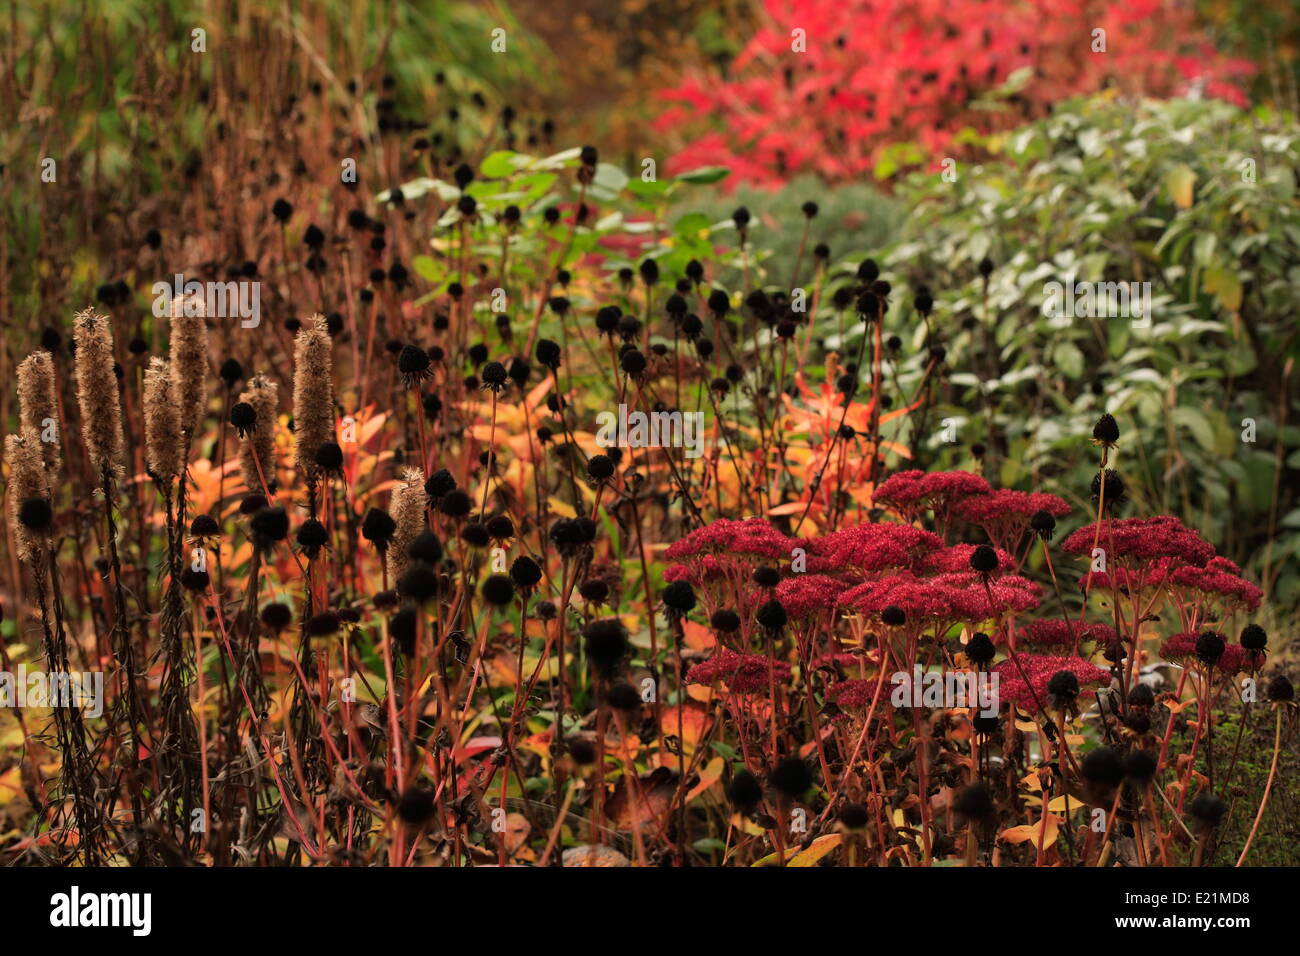 Autumn atmosphere Stock Photo